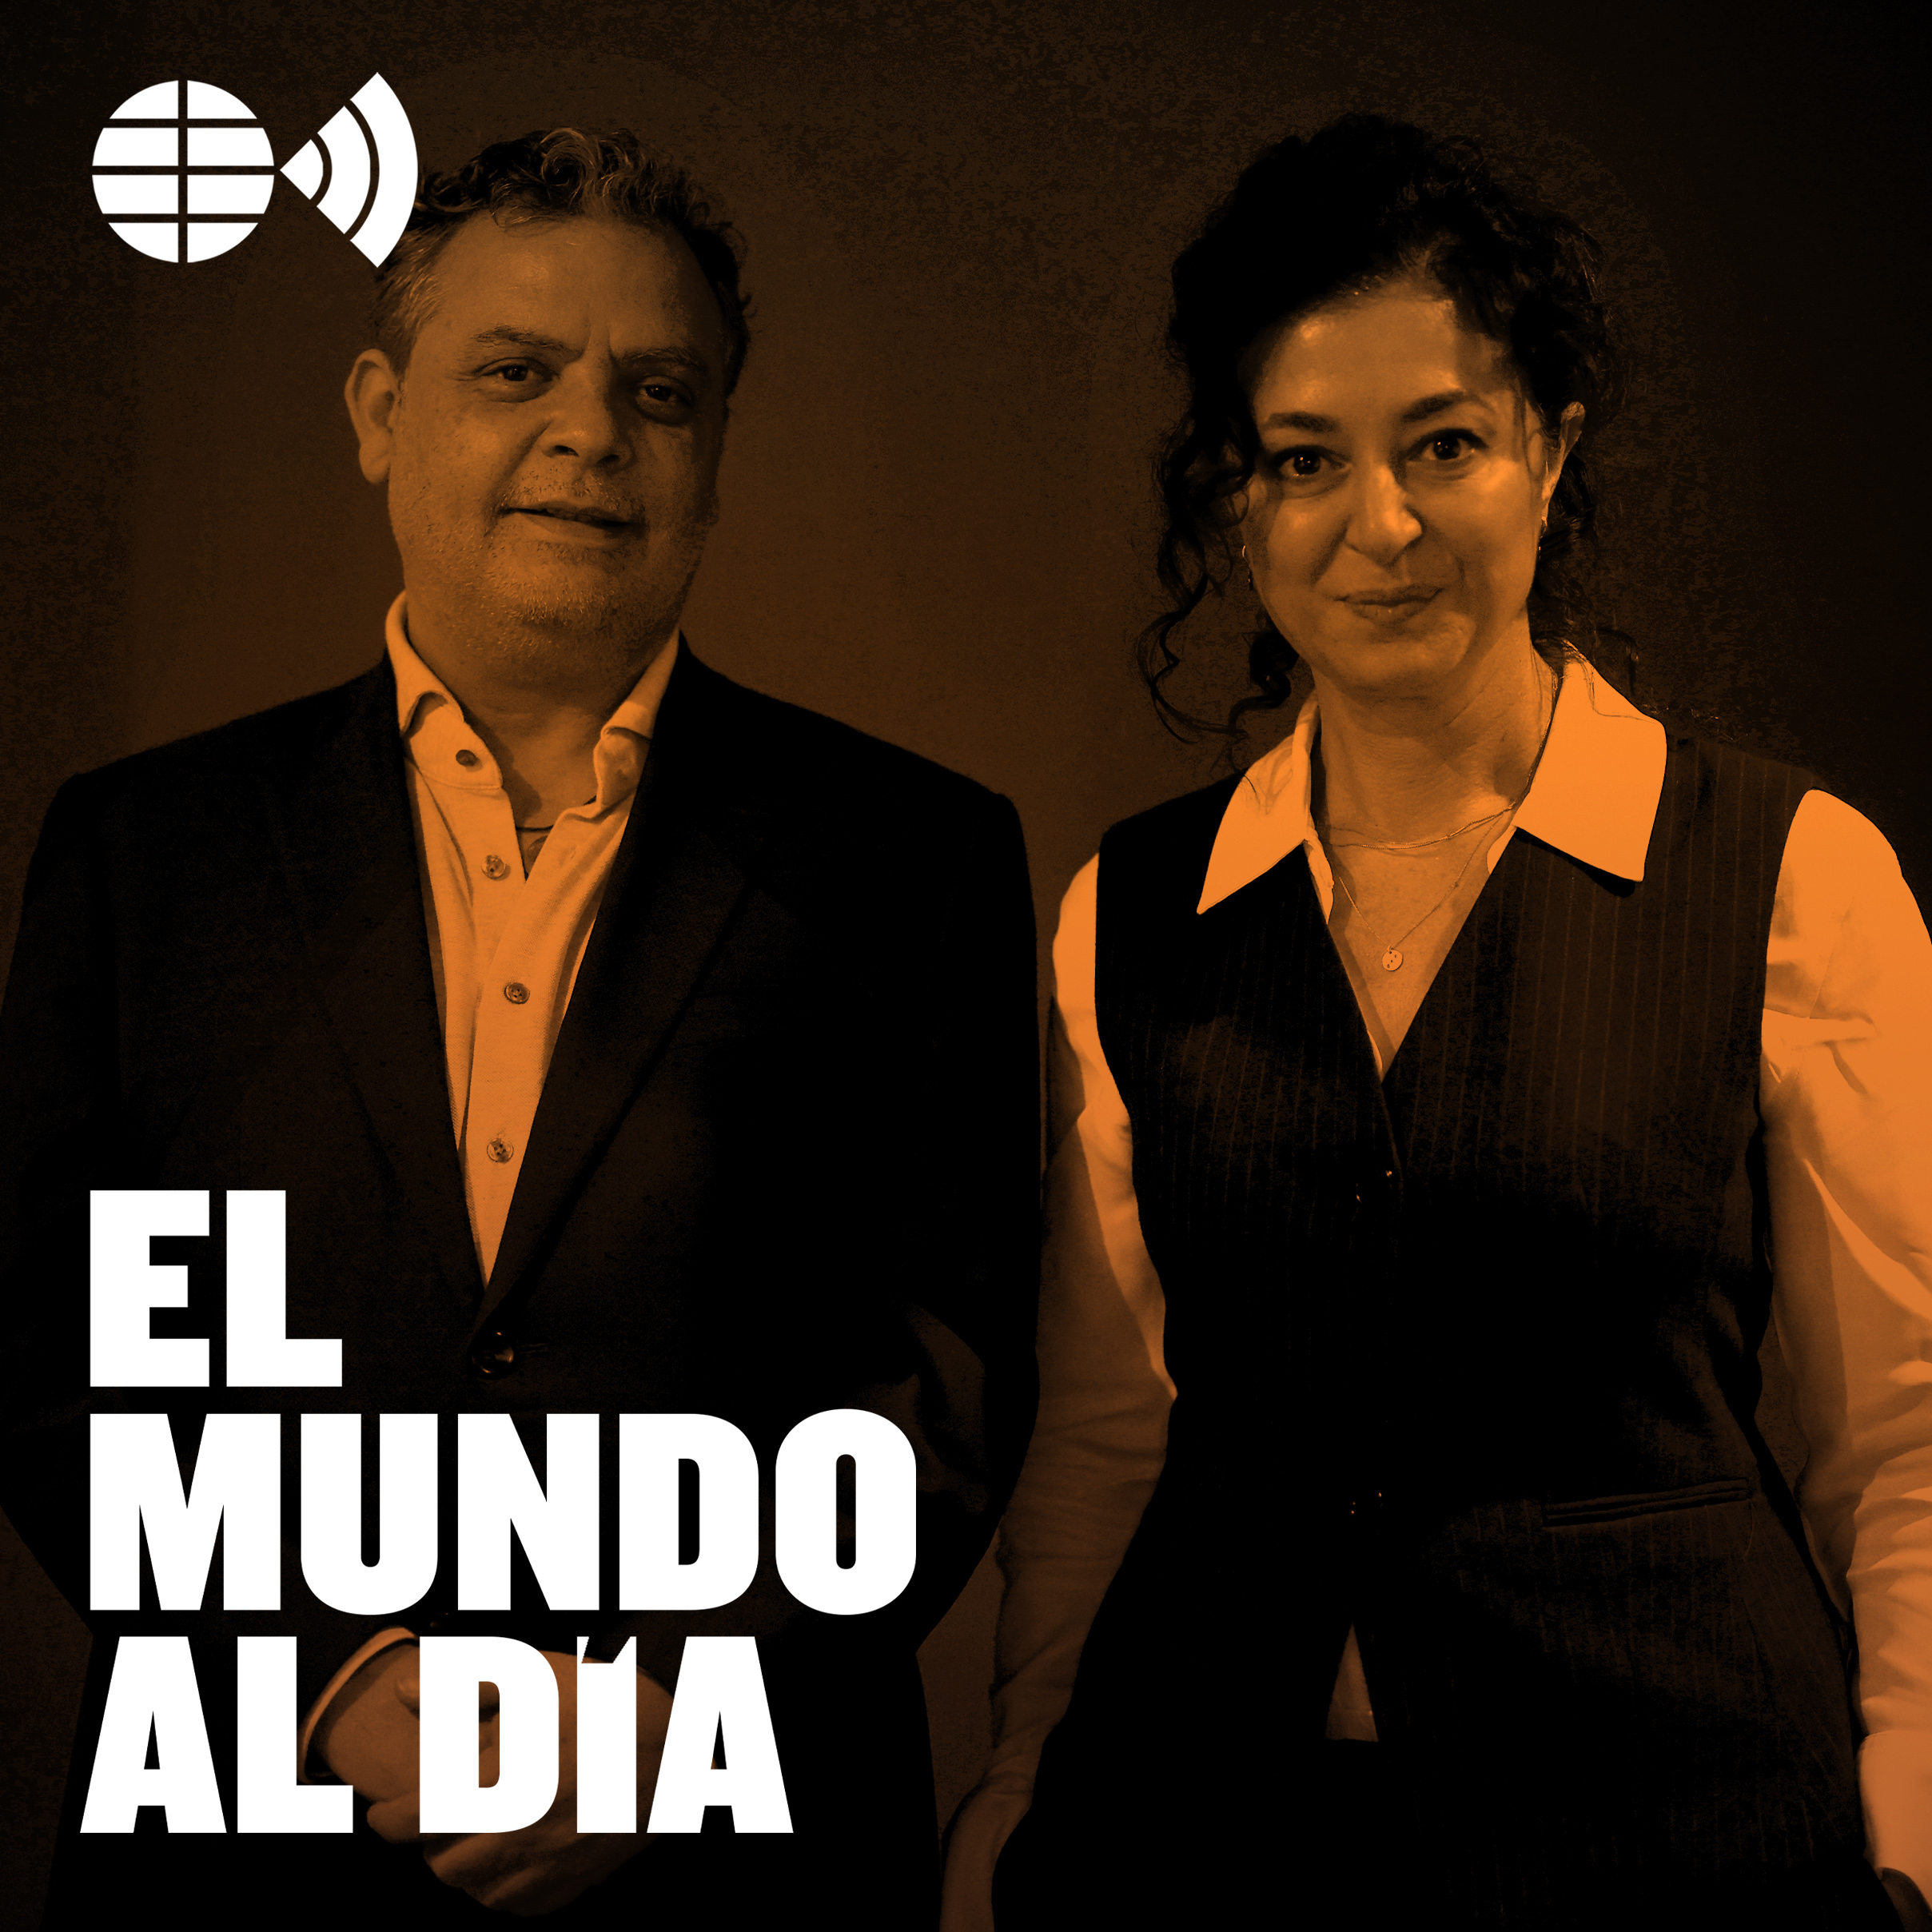 El periodismo valiente de Carlos Dada y Ece Temelkuran